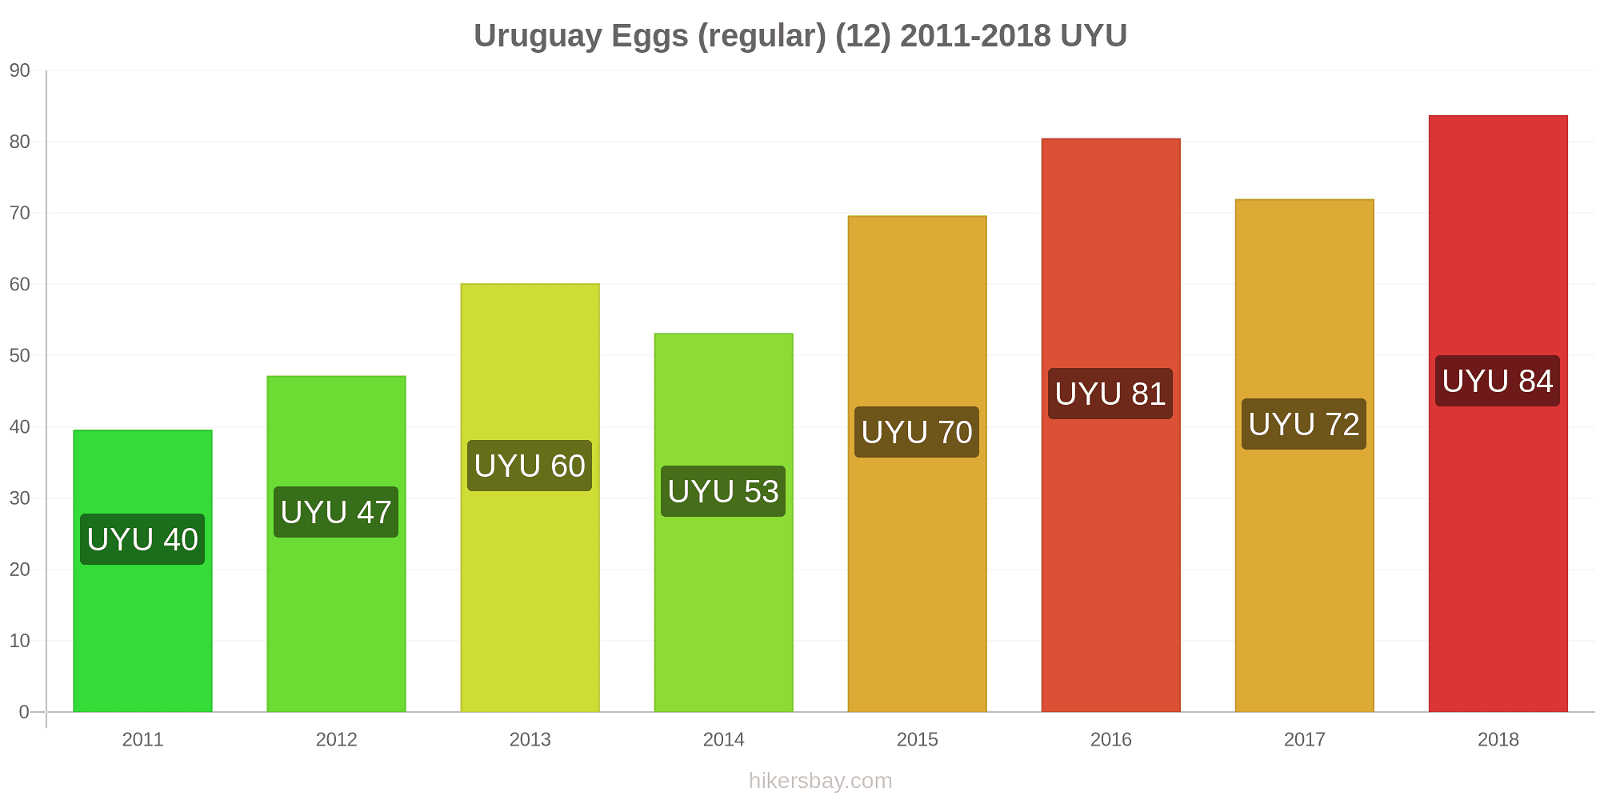 Uruguay price changes Eggs (regular) (12) hikersbay.com